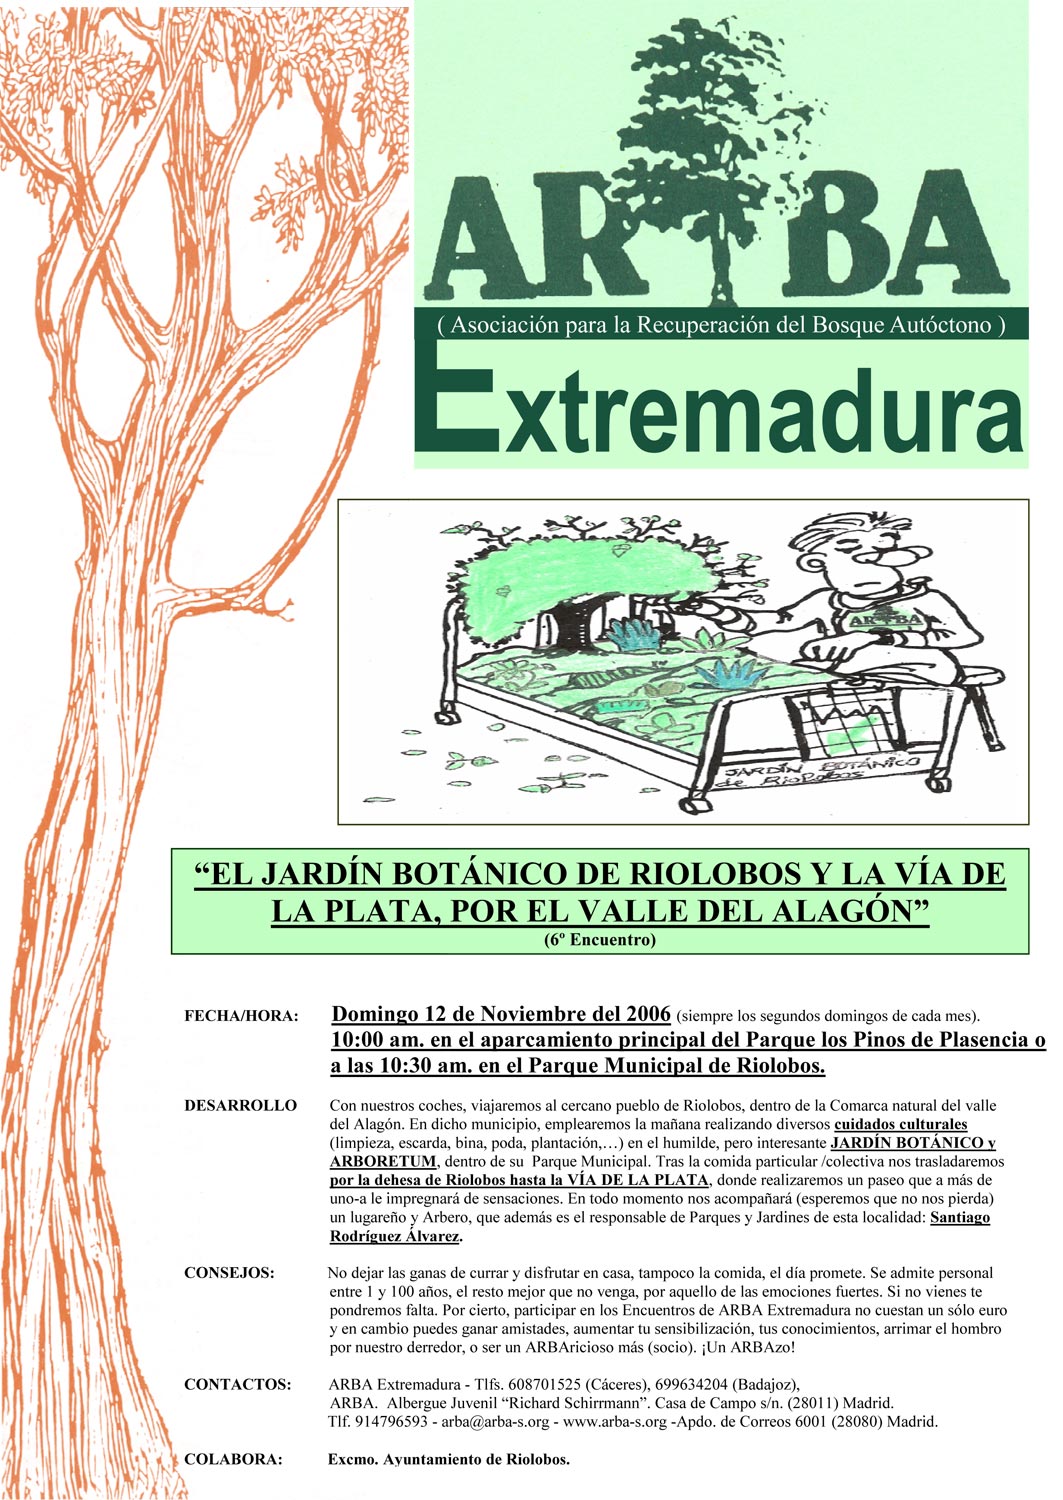 [6-Encuentro-(12-11-2006).jpg]